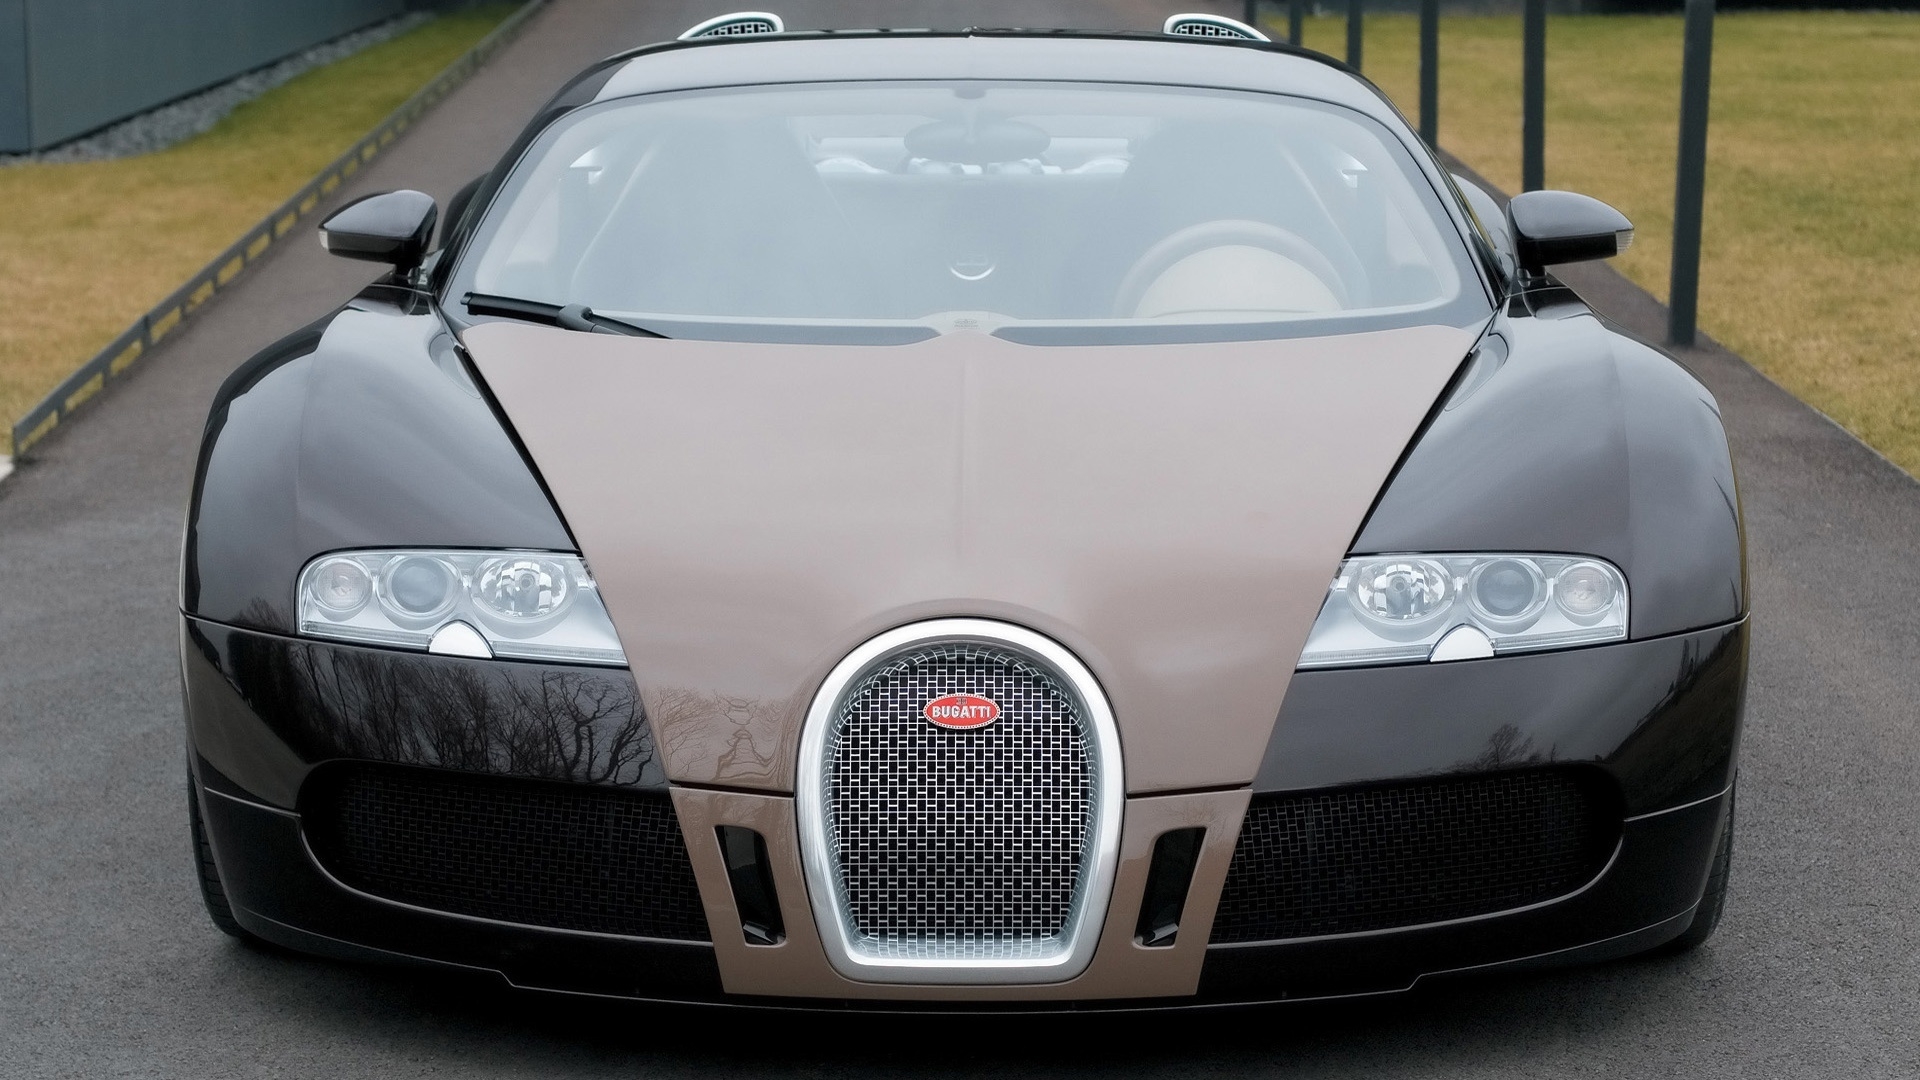 Bugatti Veyron Fbg par Hermes 2008 - Front for 1920 x 1080 HDTV 1080p resolution